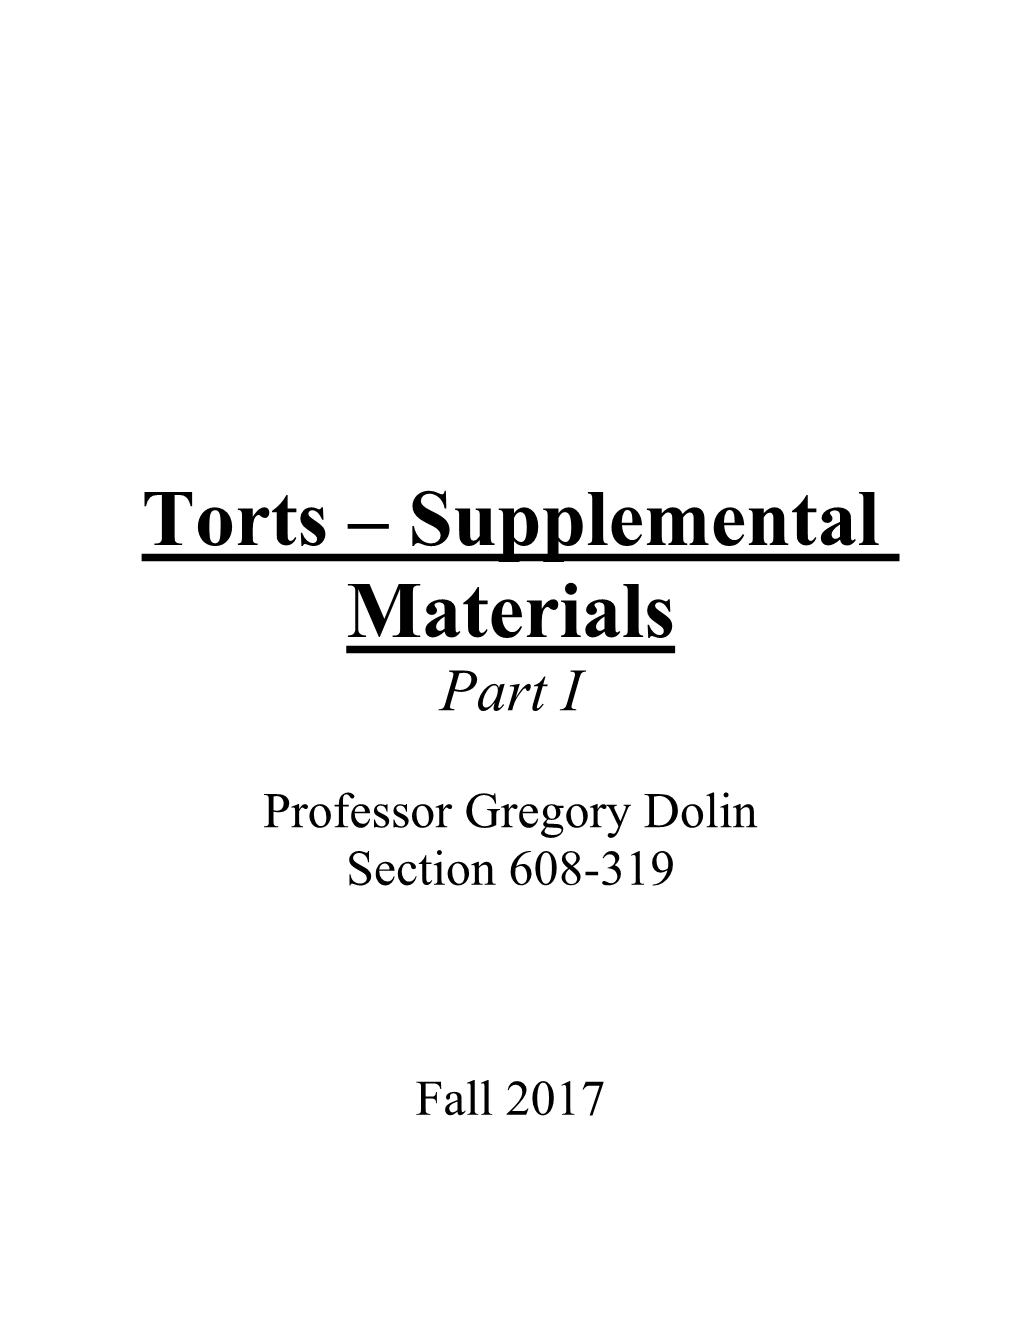 Torts – Supplemental Materials Part I